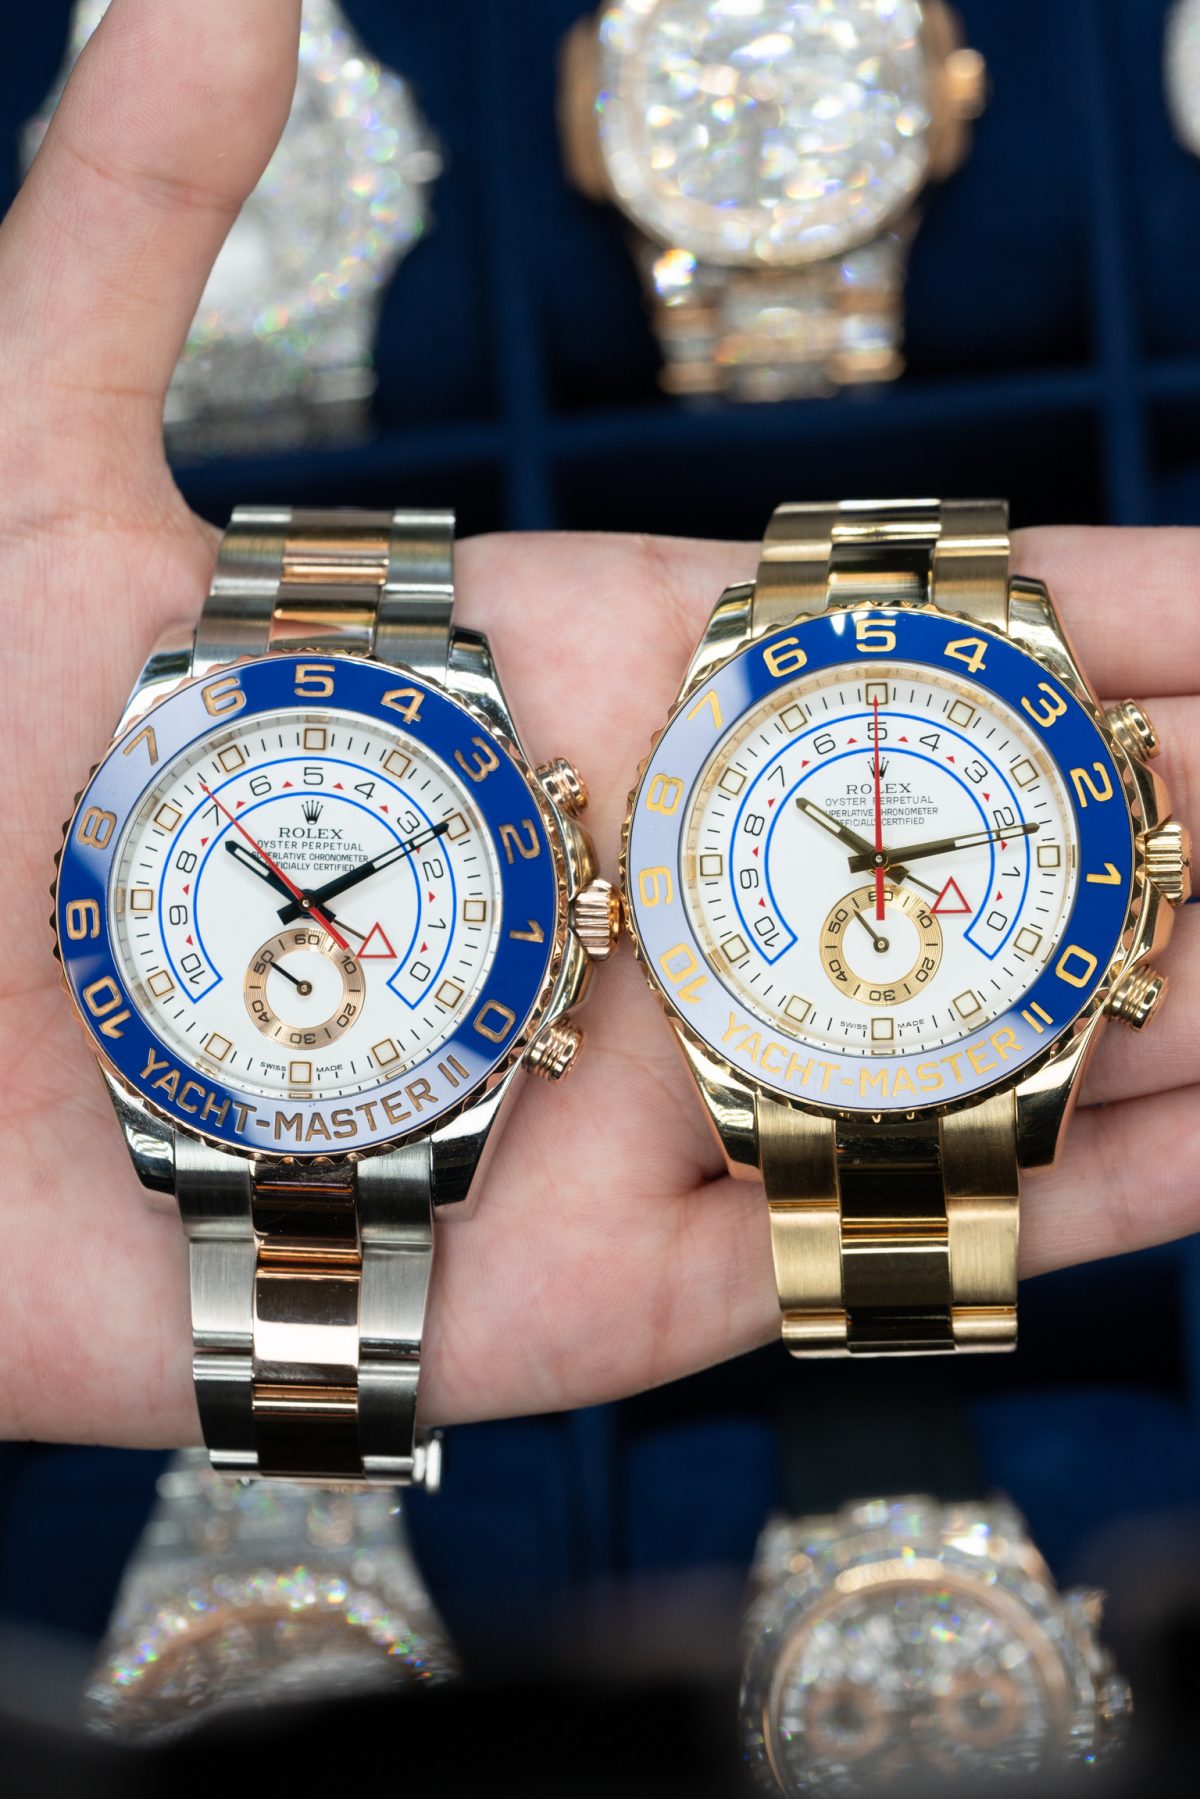 Yachtmaster II luxury watch